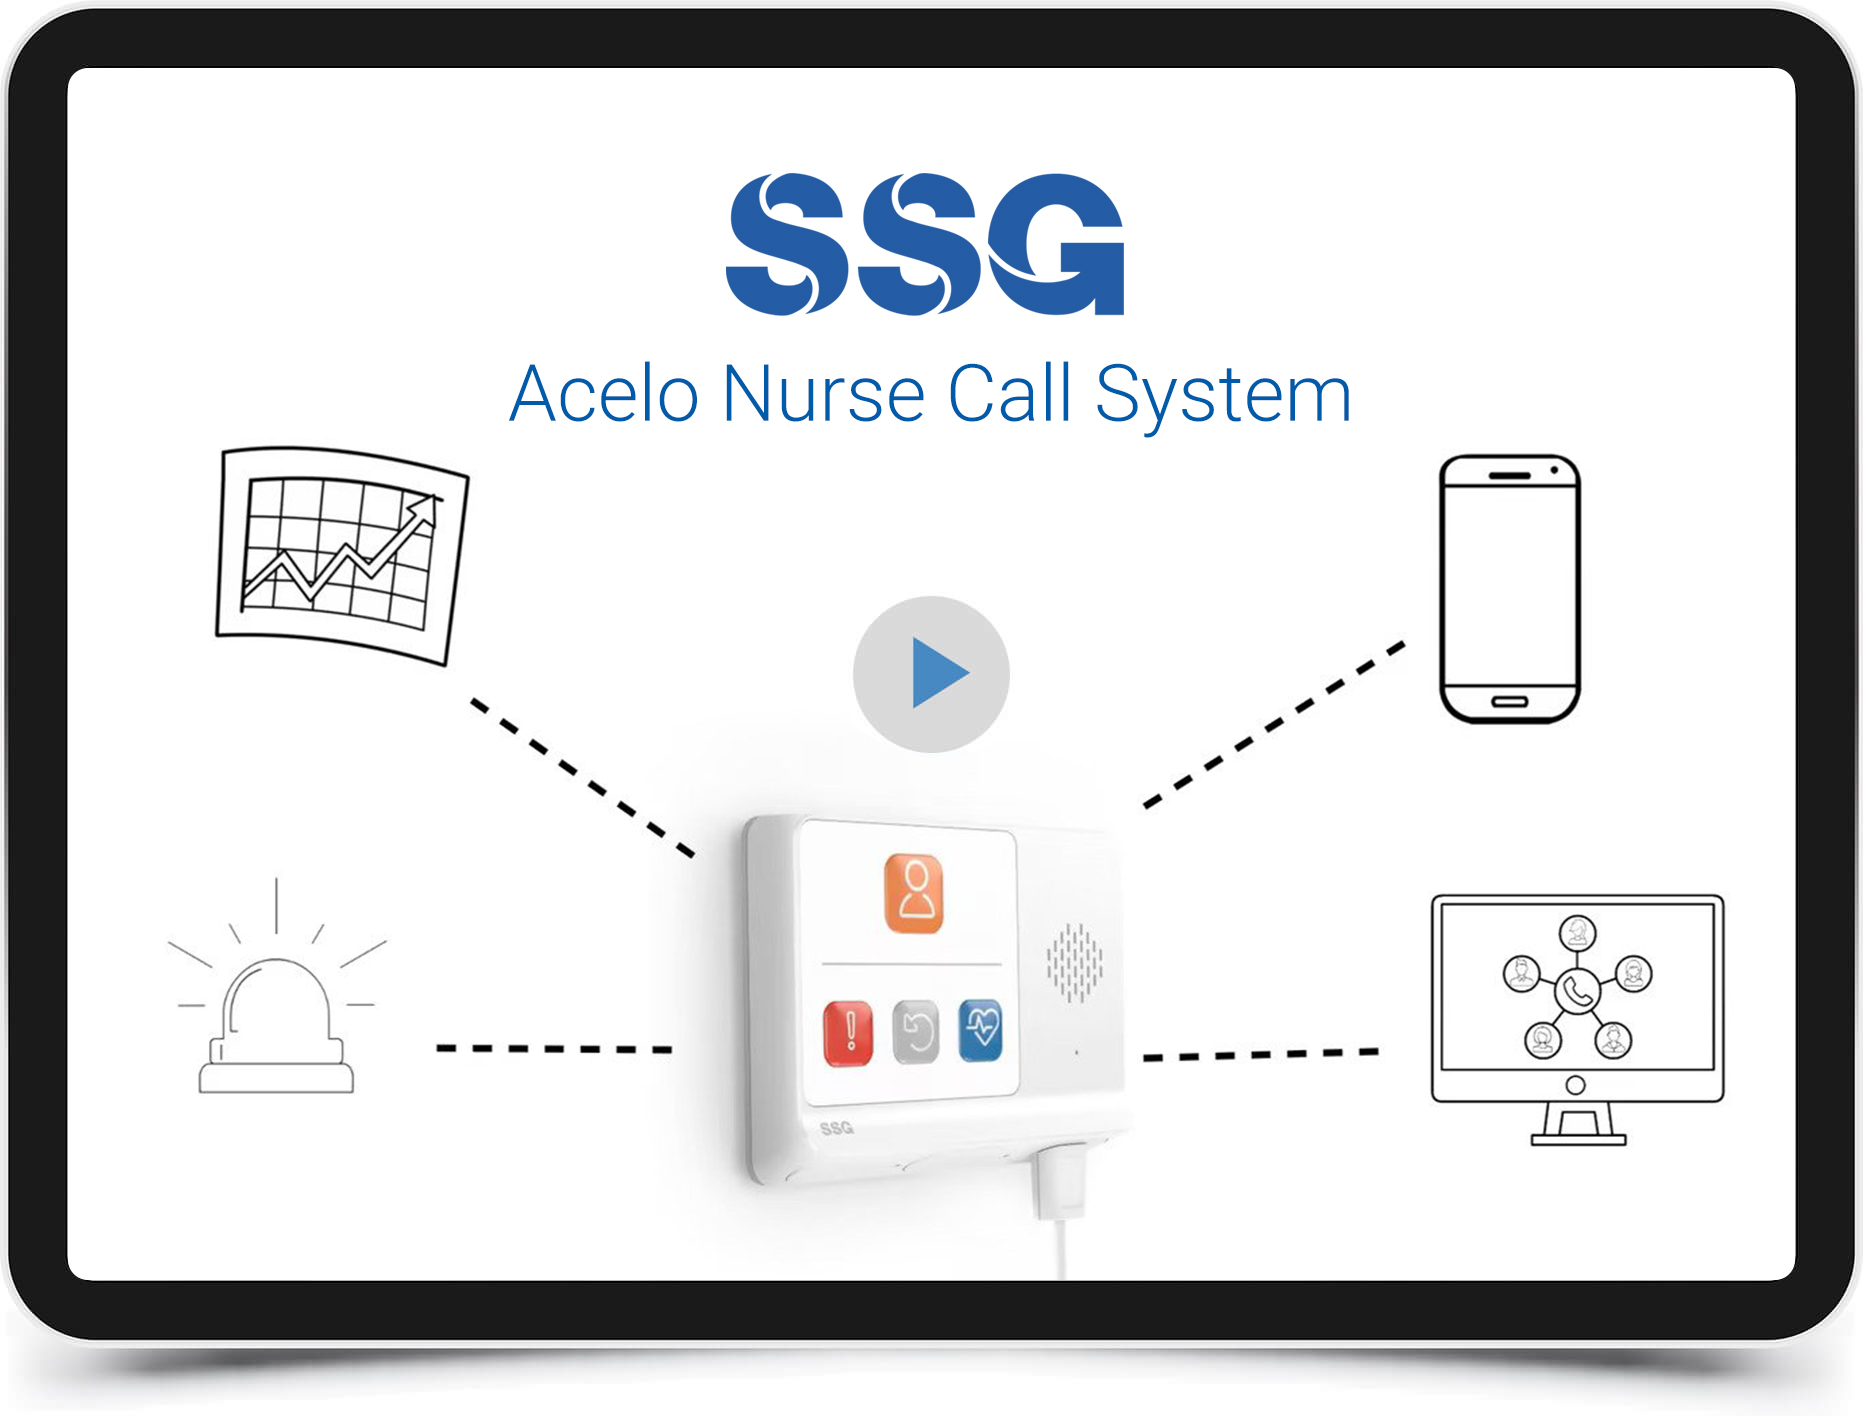 Acelo Nurse Call System